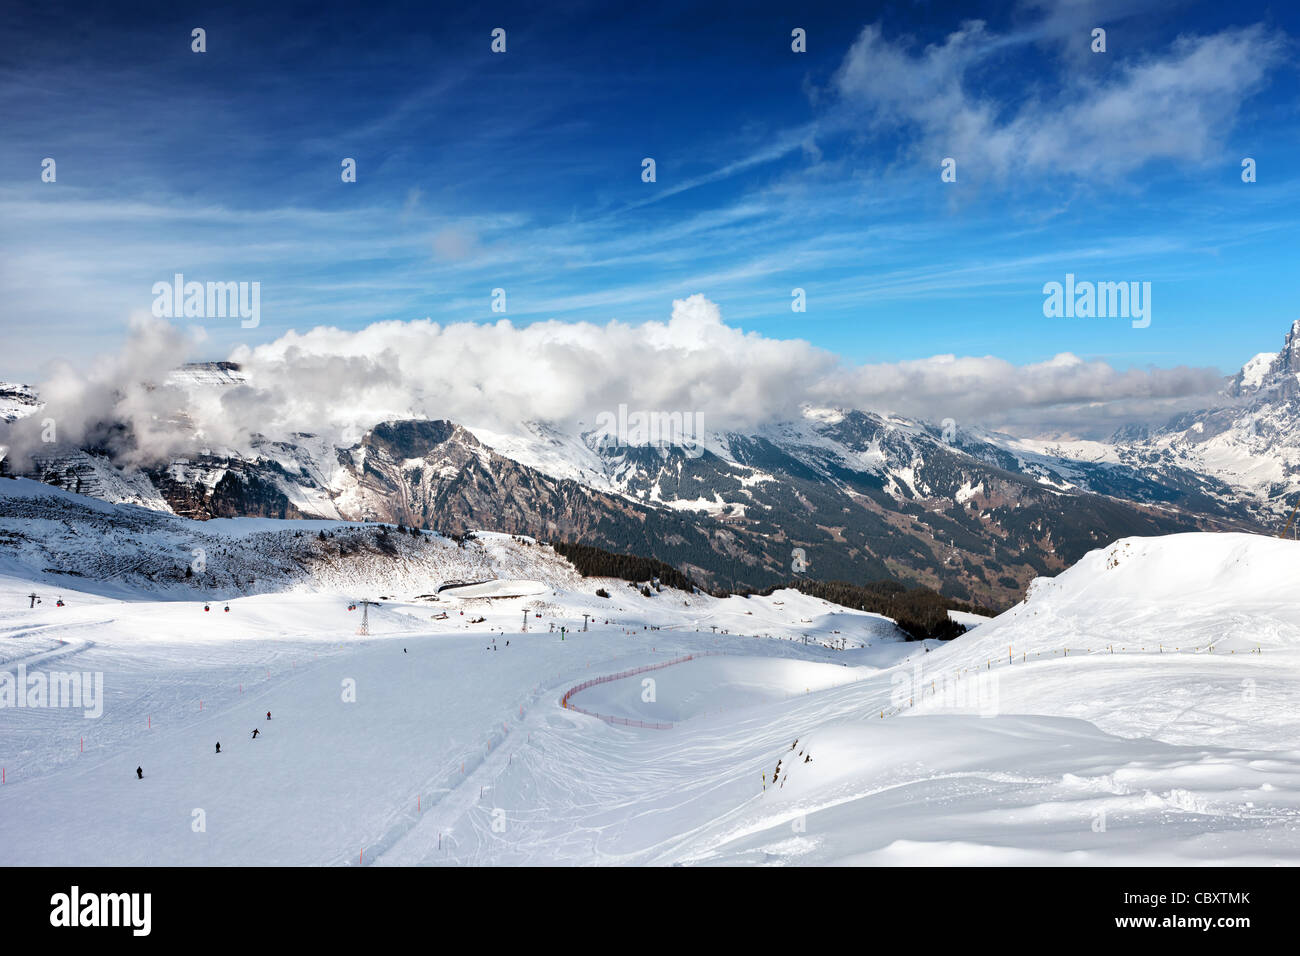 La pista da sci. Stazione sciistica di Grindelwald in Svizzera. Alpi bernesi. Foto Stock